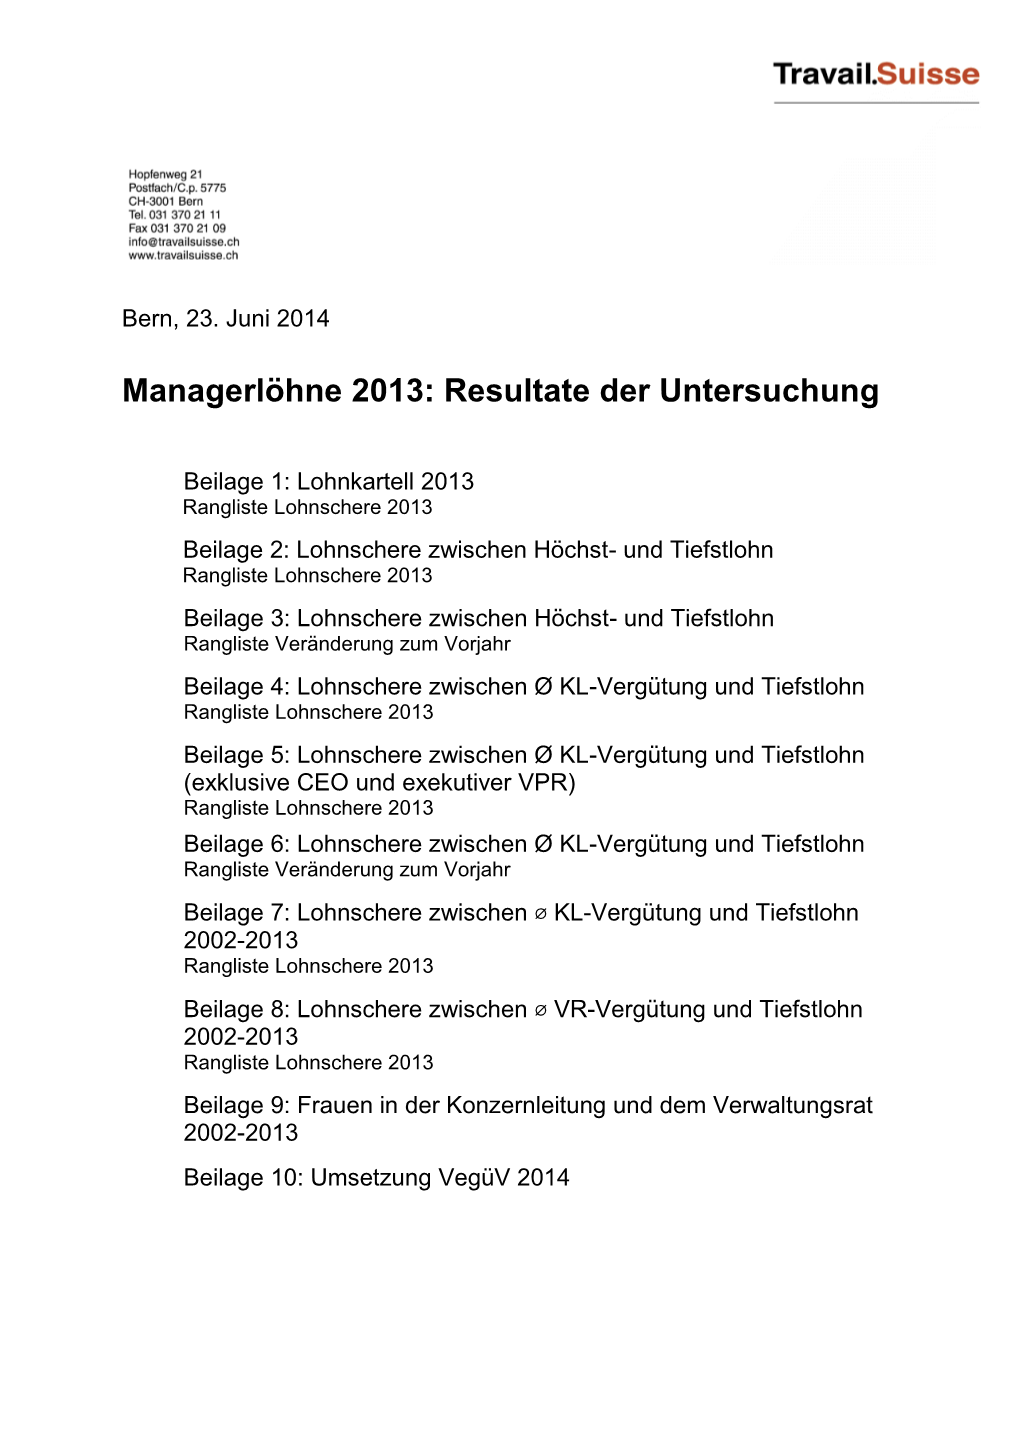 Managerlöhne 2013: Resultate Der Untersuchung